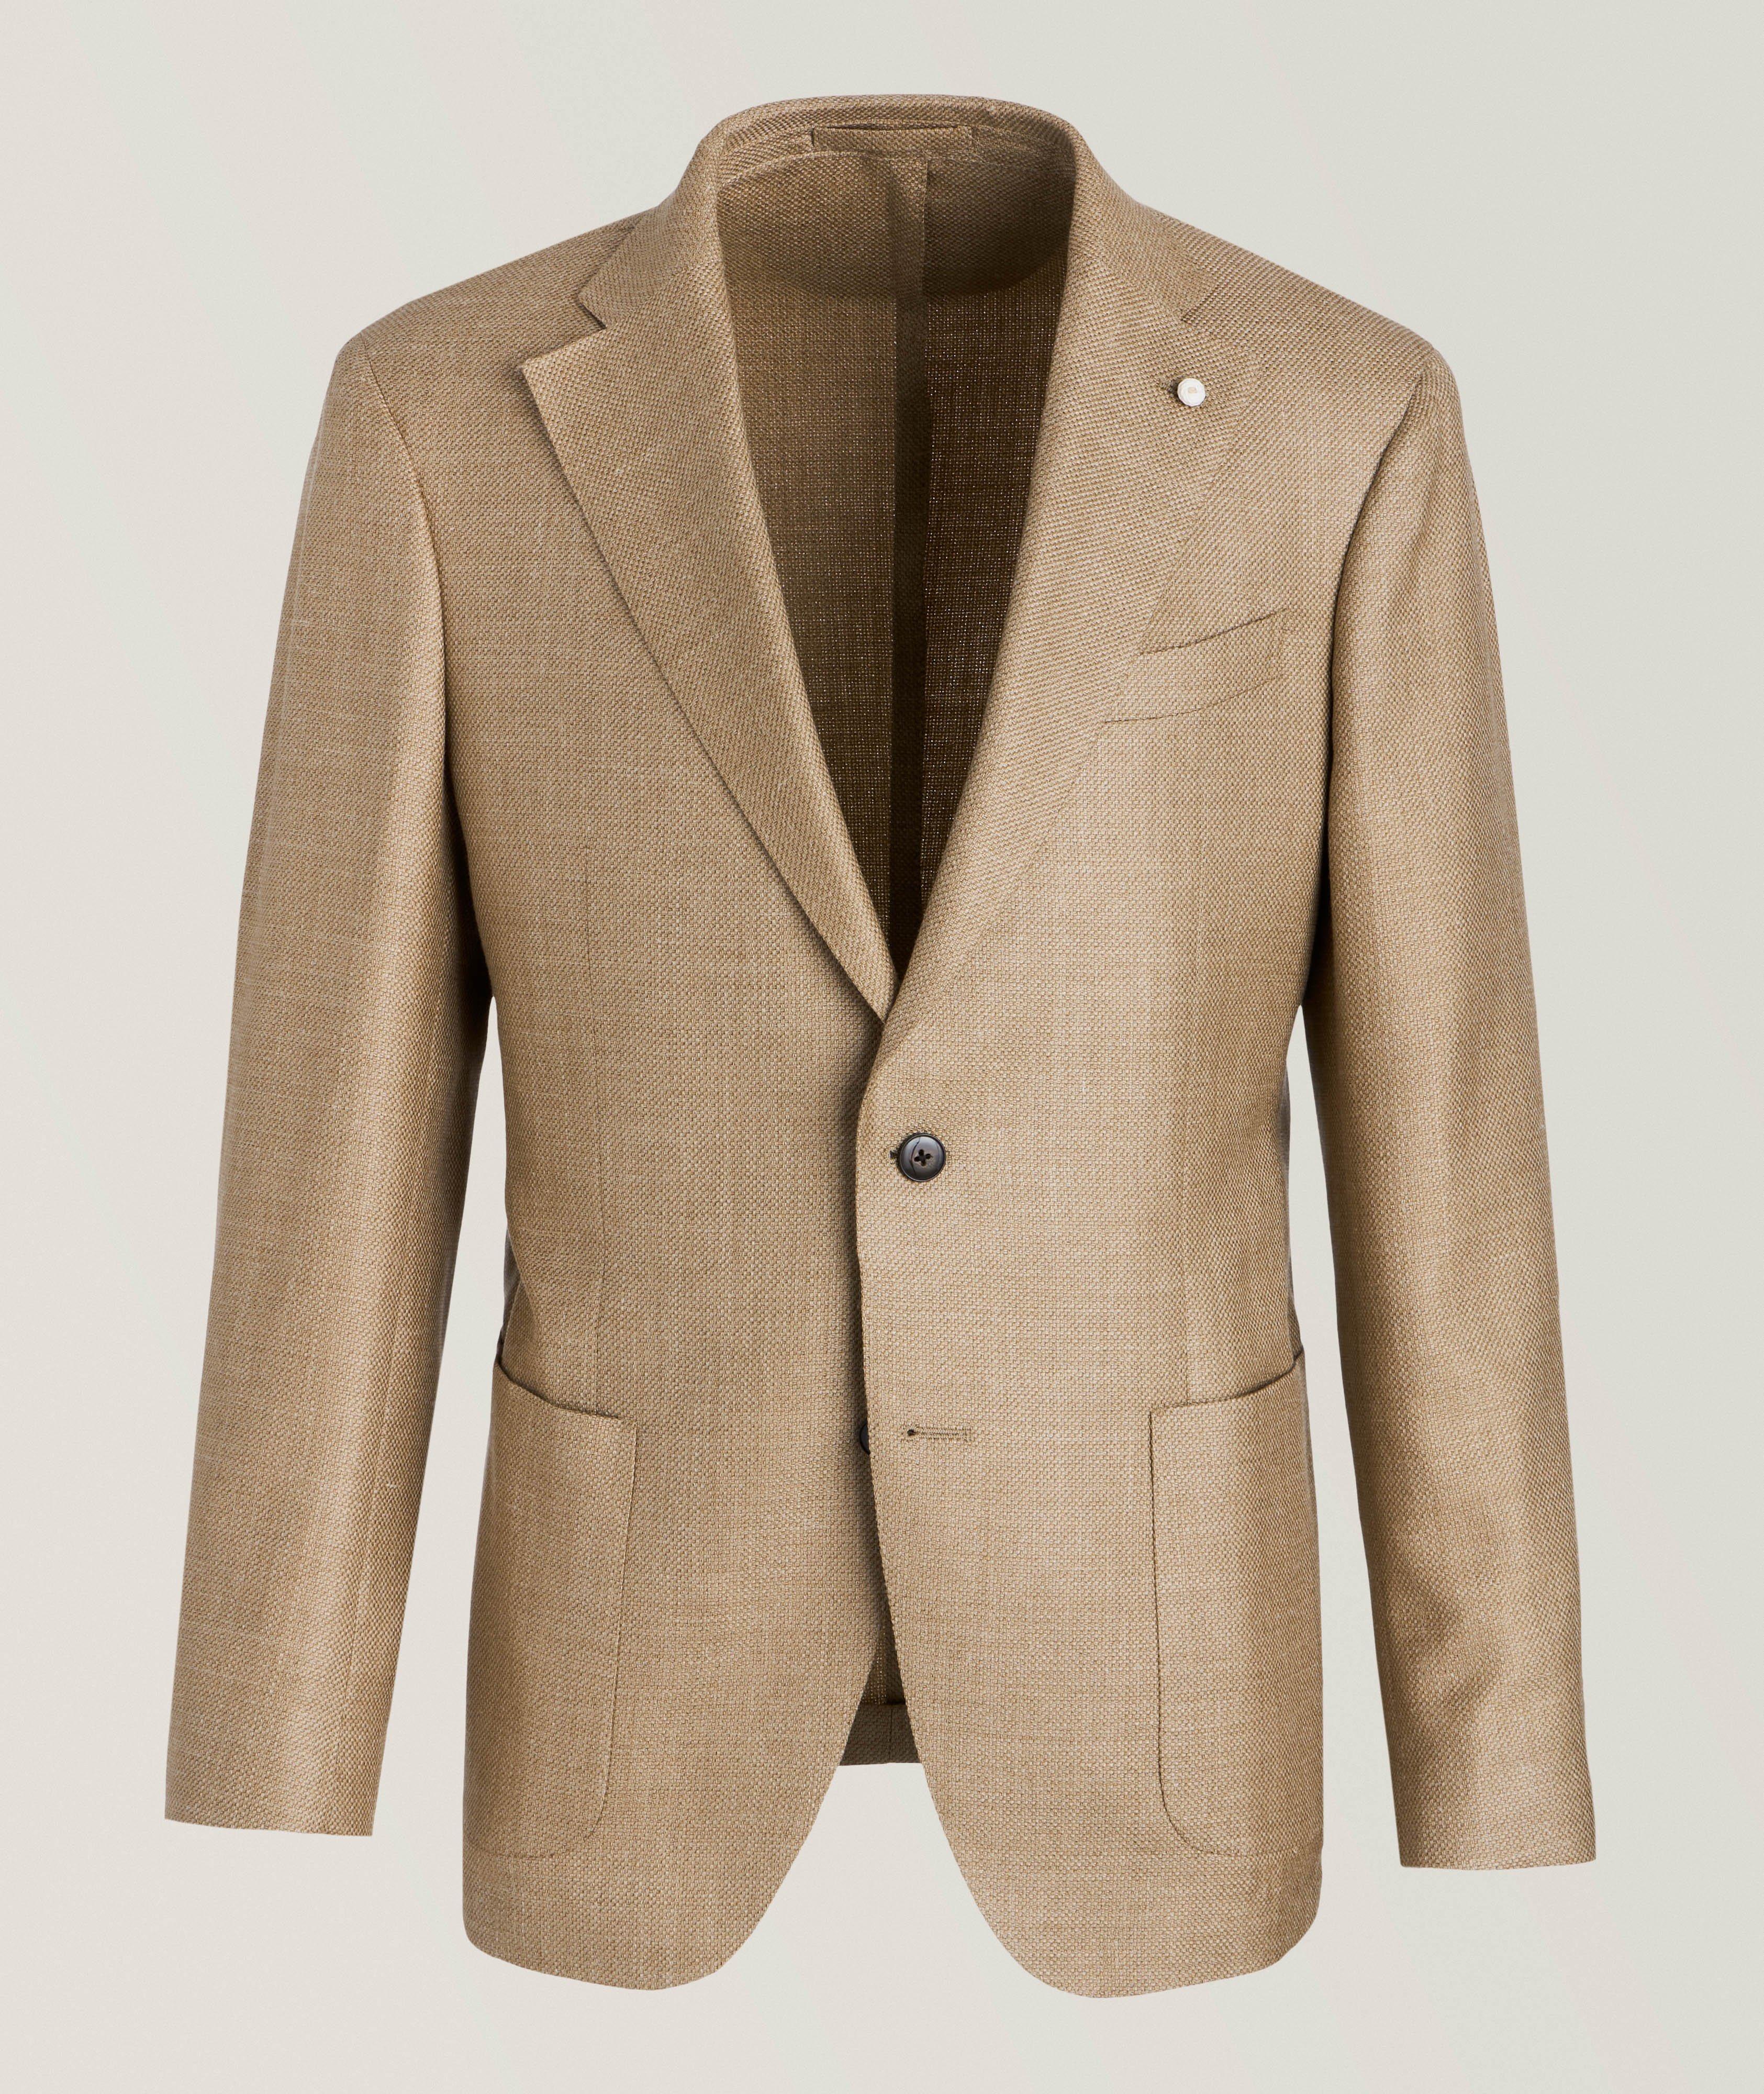 Textured Basketweave Virgin Wool-Blend Sport Jacket  image 0